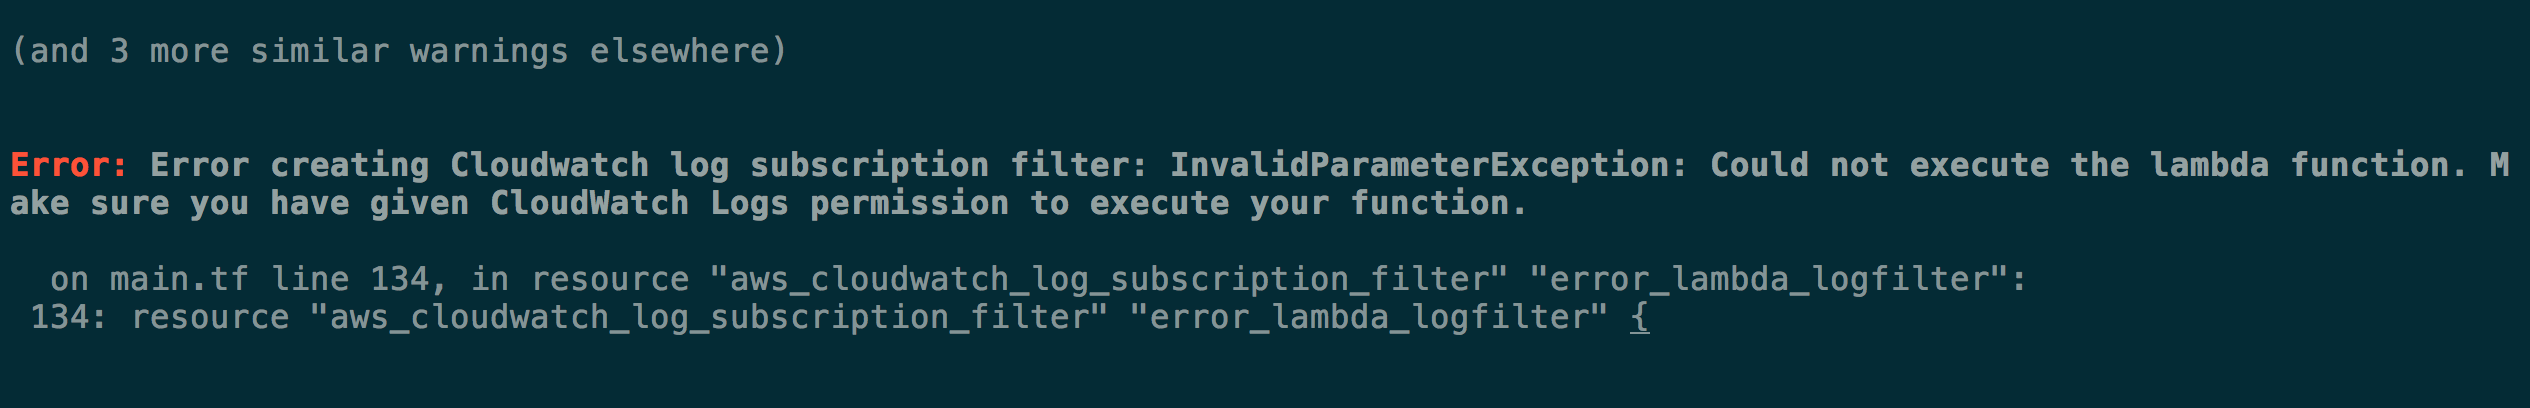 tf-lambda-error-cw-logs.png